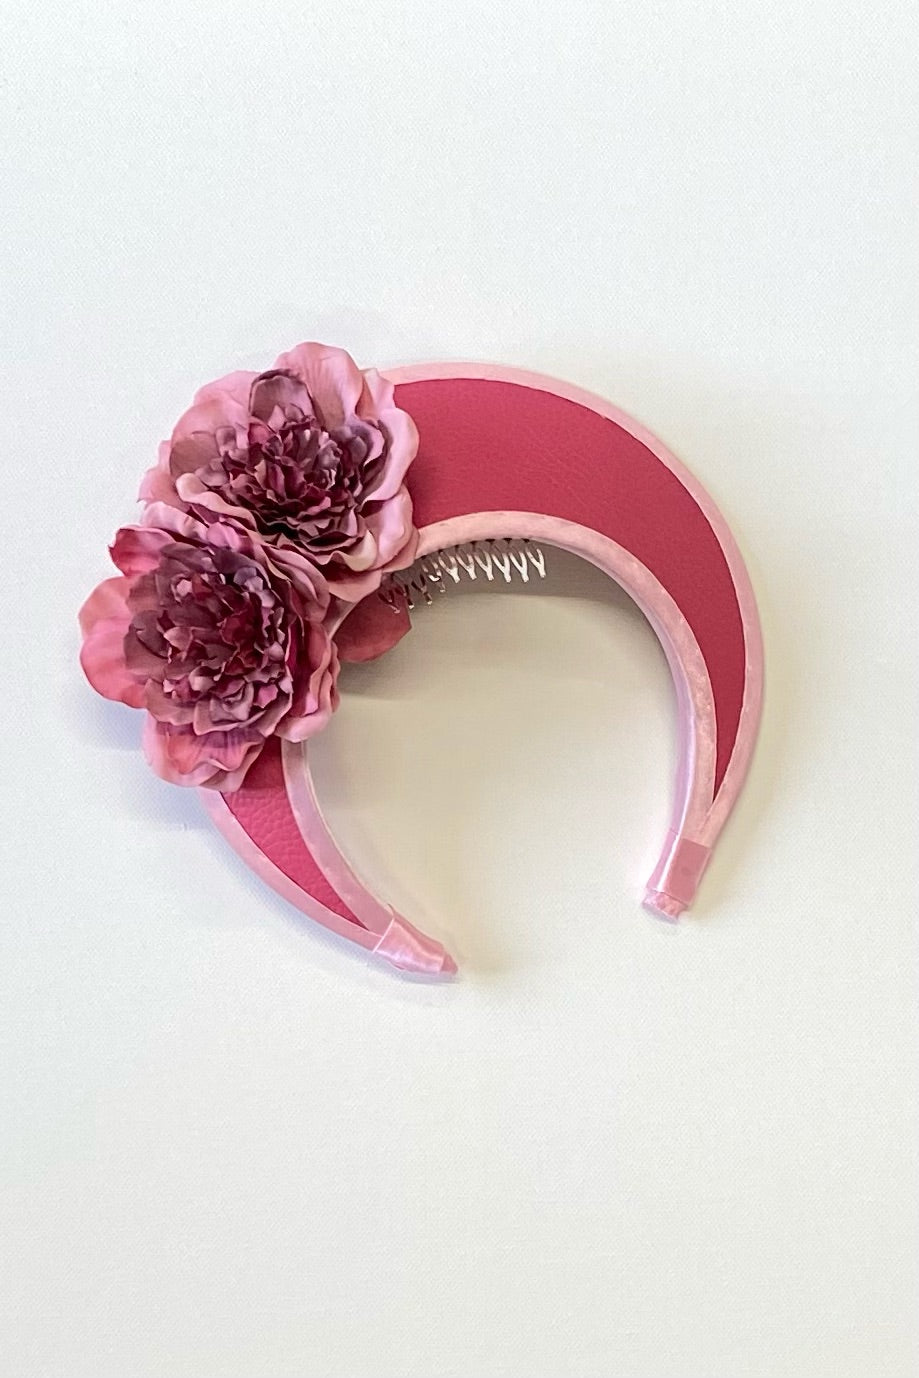 Pink designer headpiece crown